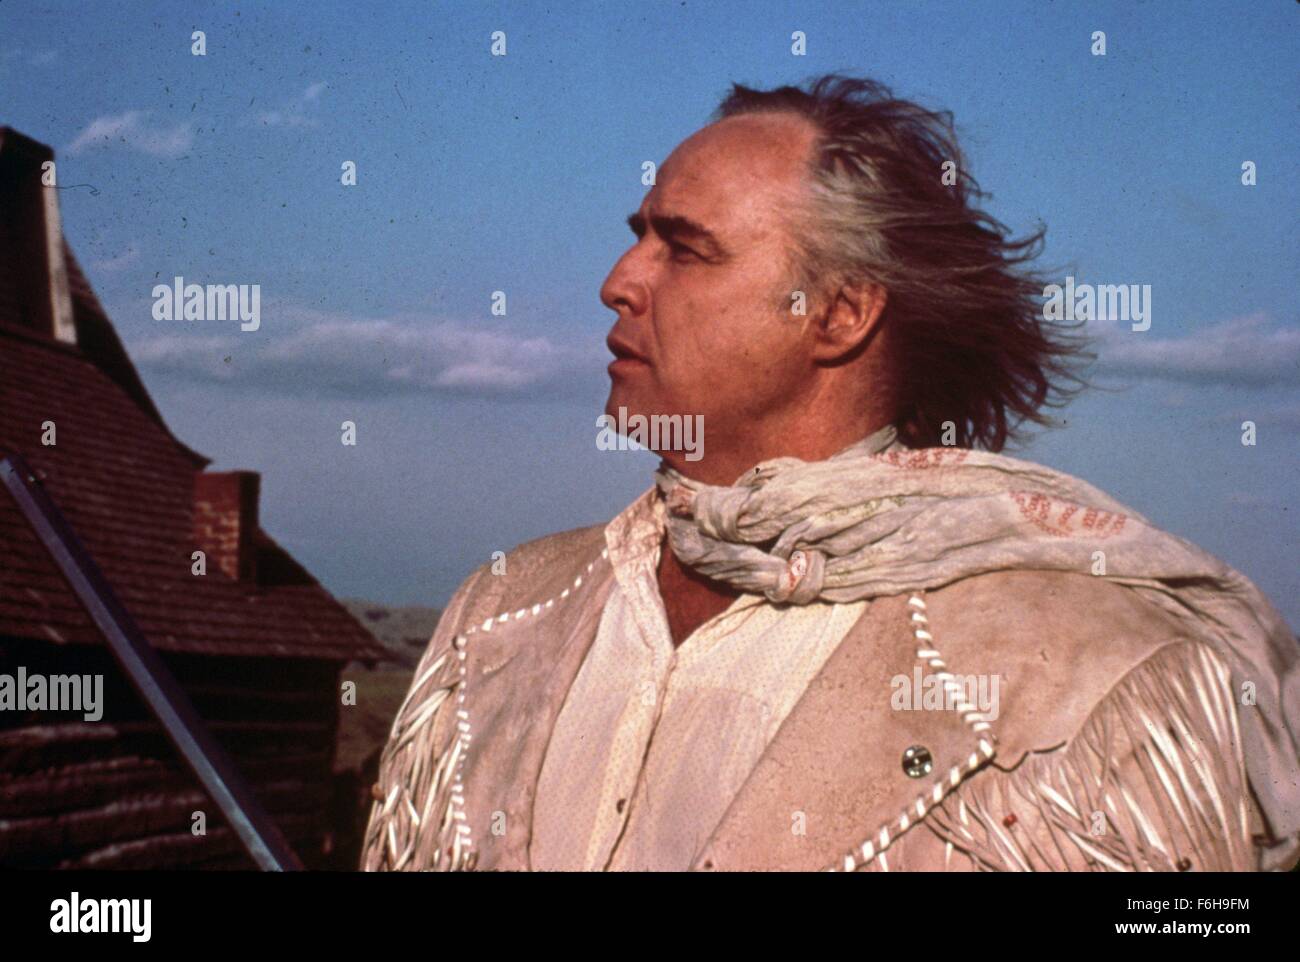 1976, le titre du film : MISSOURI BREAKS, Directeur : Arthur Penn, Photo : Marlon Brando. (Crédit Image : SNAP) Banque D'Images